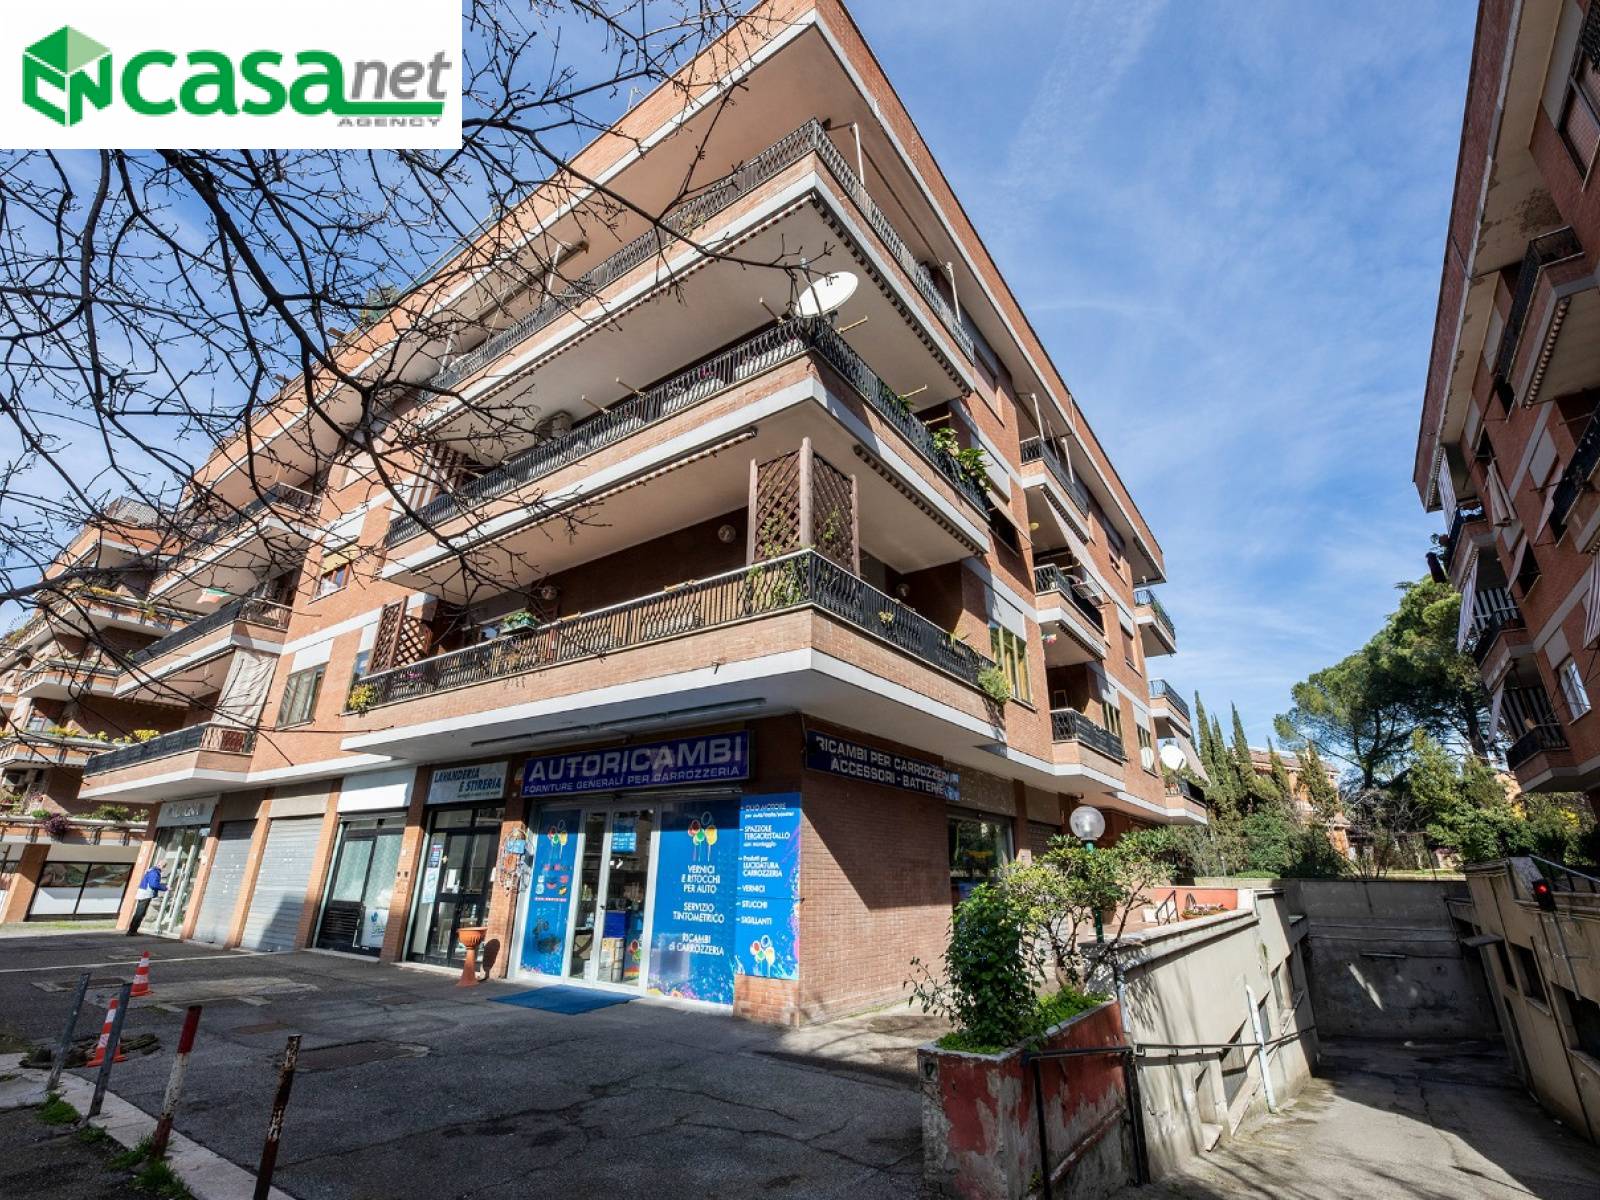 Appartamento in vendita a Guidonia Montecelio, 4 locali, zona Località: ColleVerde, prezzo € 249.000 | CambioCasa.it